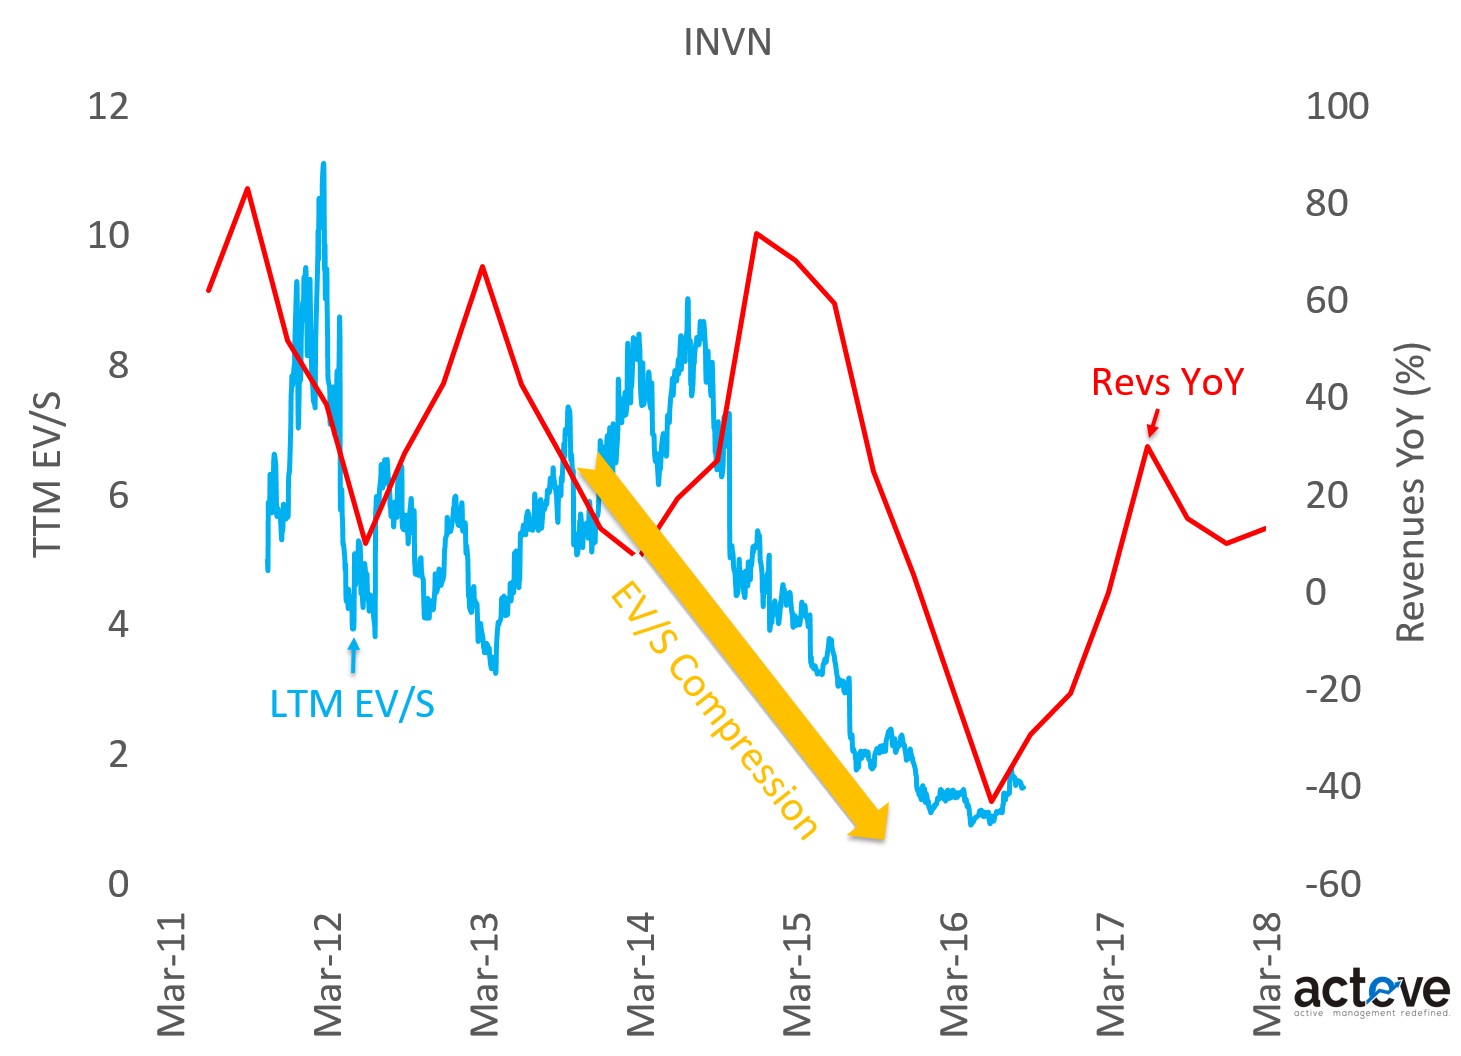 INVN EV/S vs. Revenues YoY